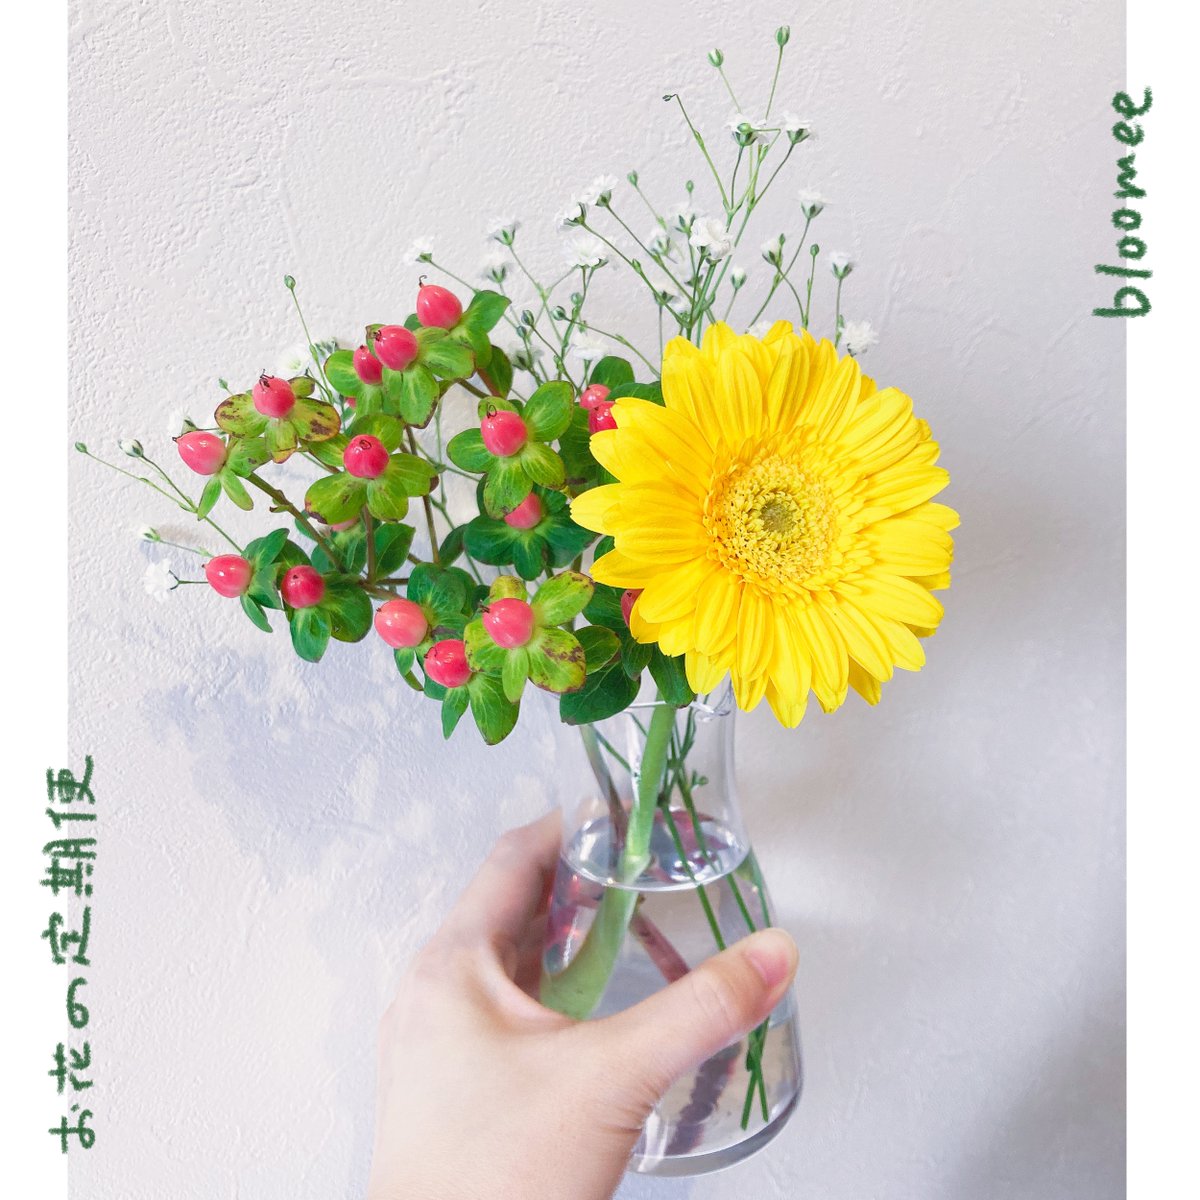 今週のお花は色んな色が入ってて、
娘のお気に入りのようでした💐
もうすぐ春だ🌸

bloomee(@bloomee_jp)

👇公式サイト👇
https://t.co/UBaW4CybQR…

#ブルーミー #bloomee #お花の定期便 #お花のサブスク #PR 